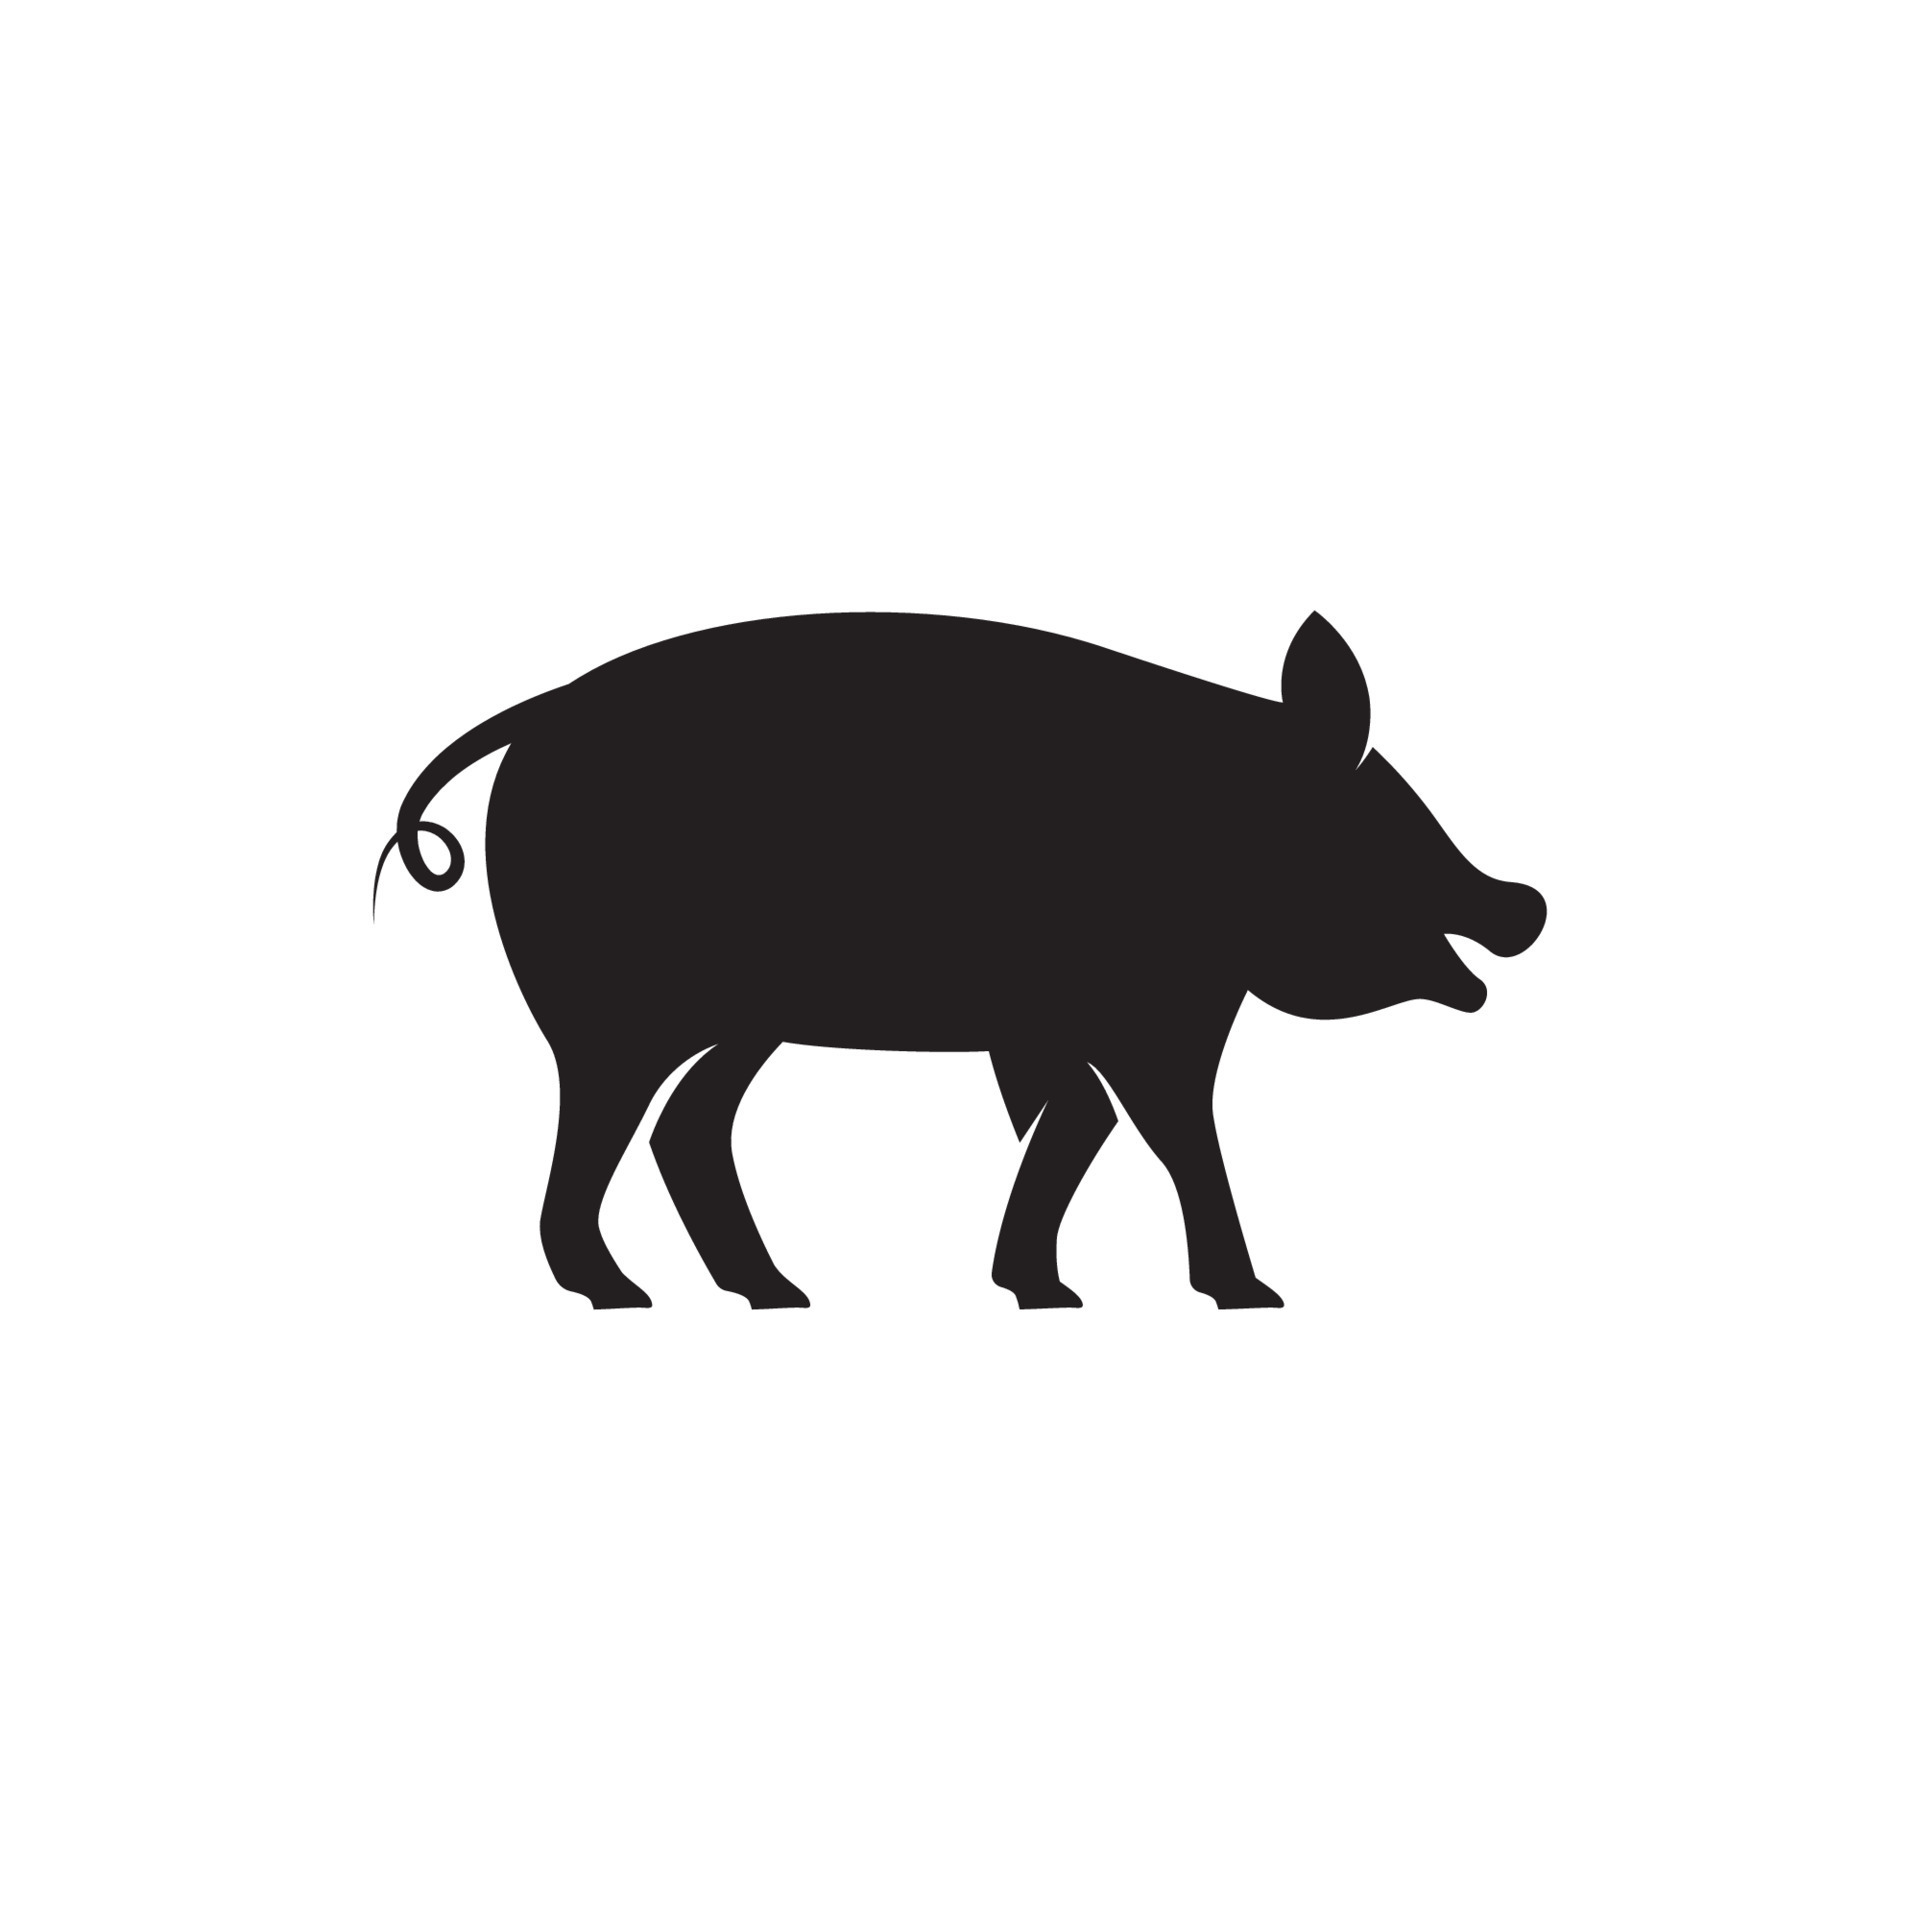 Logo cochon